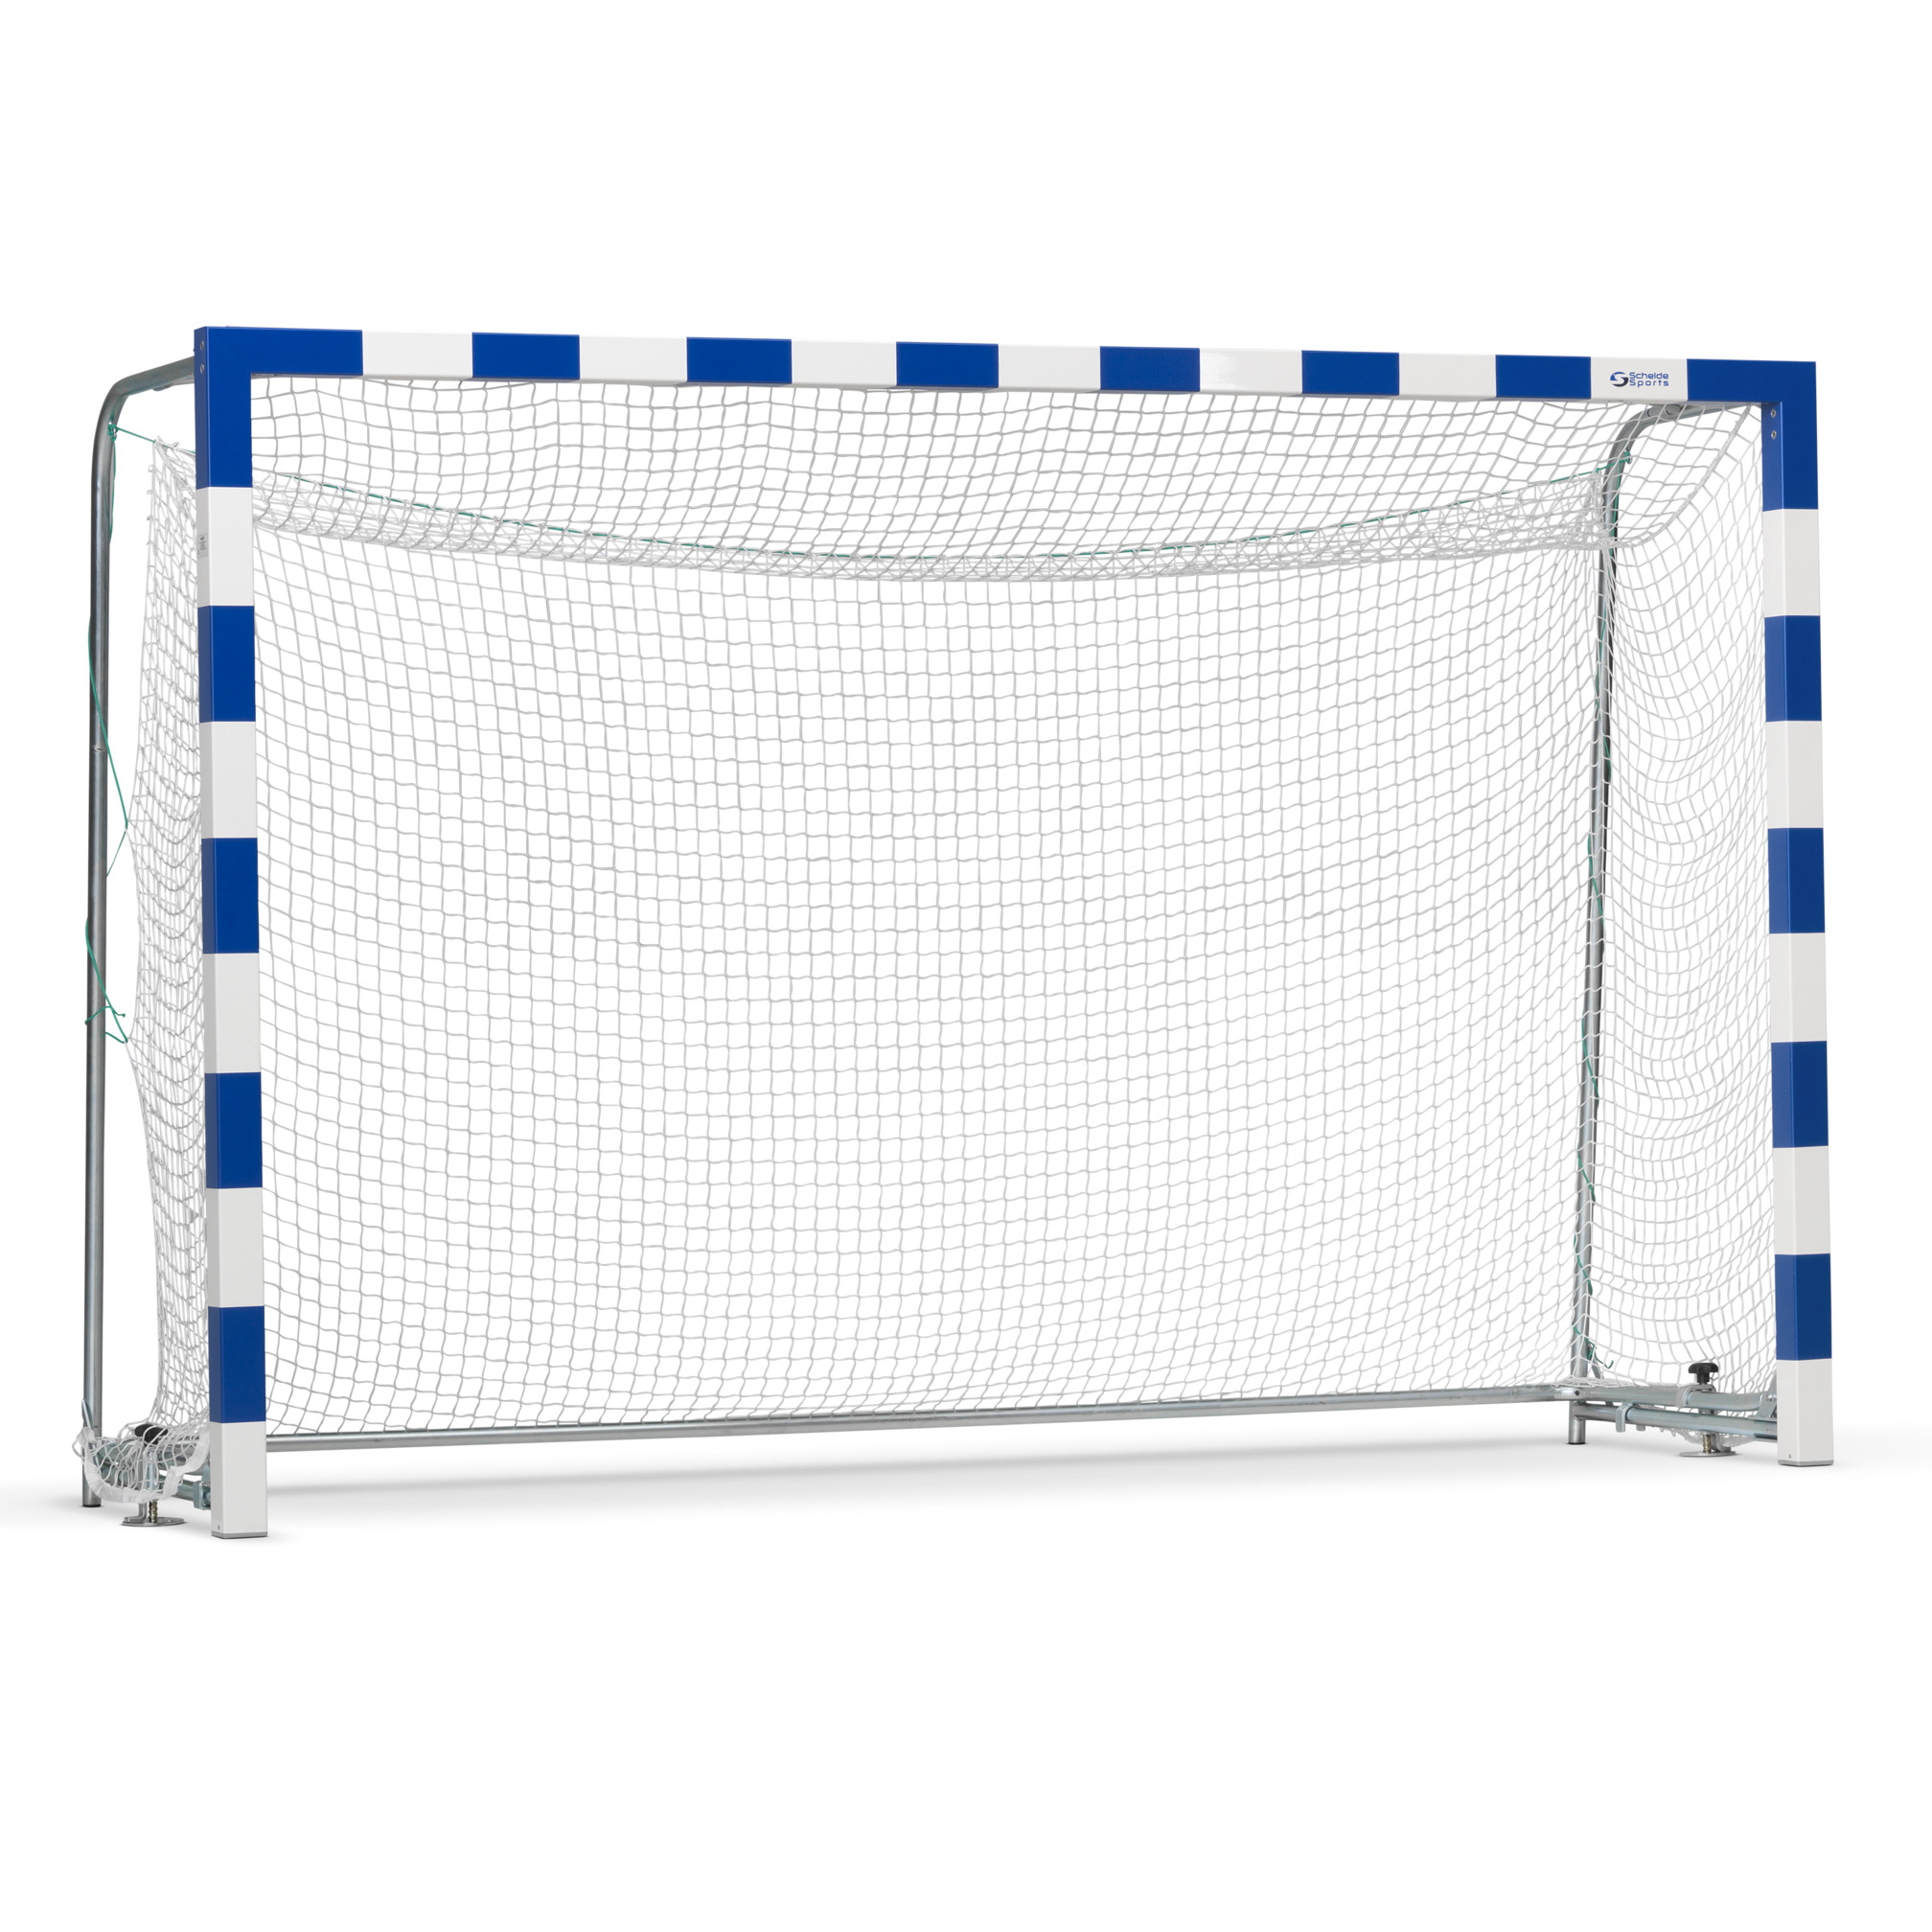 Goal net 3x2 m, meshes of 4.5x4.5 cm, ø 2.8 mm